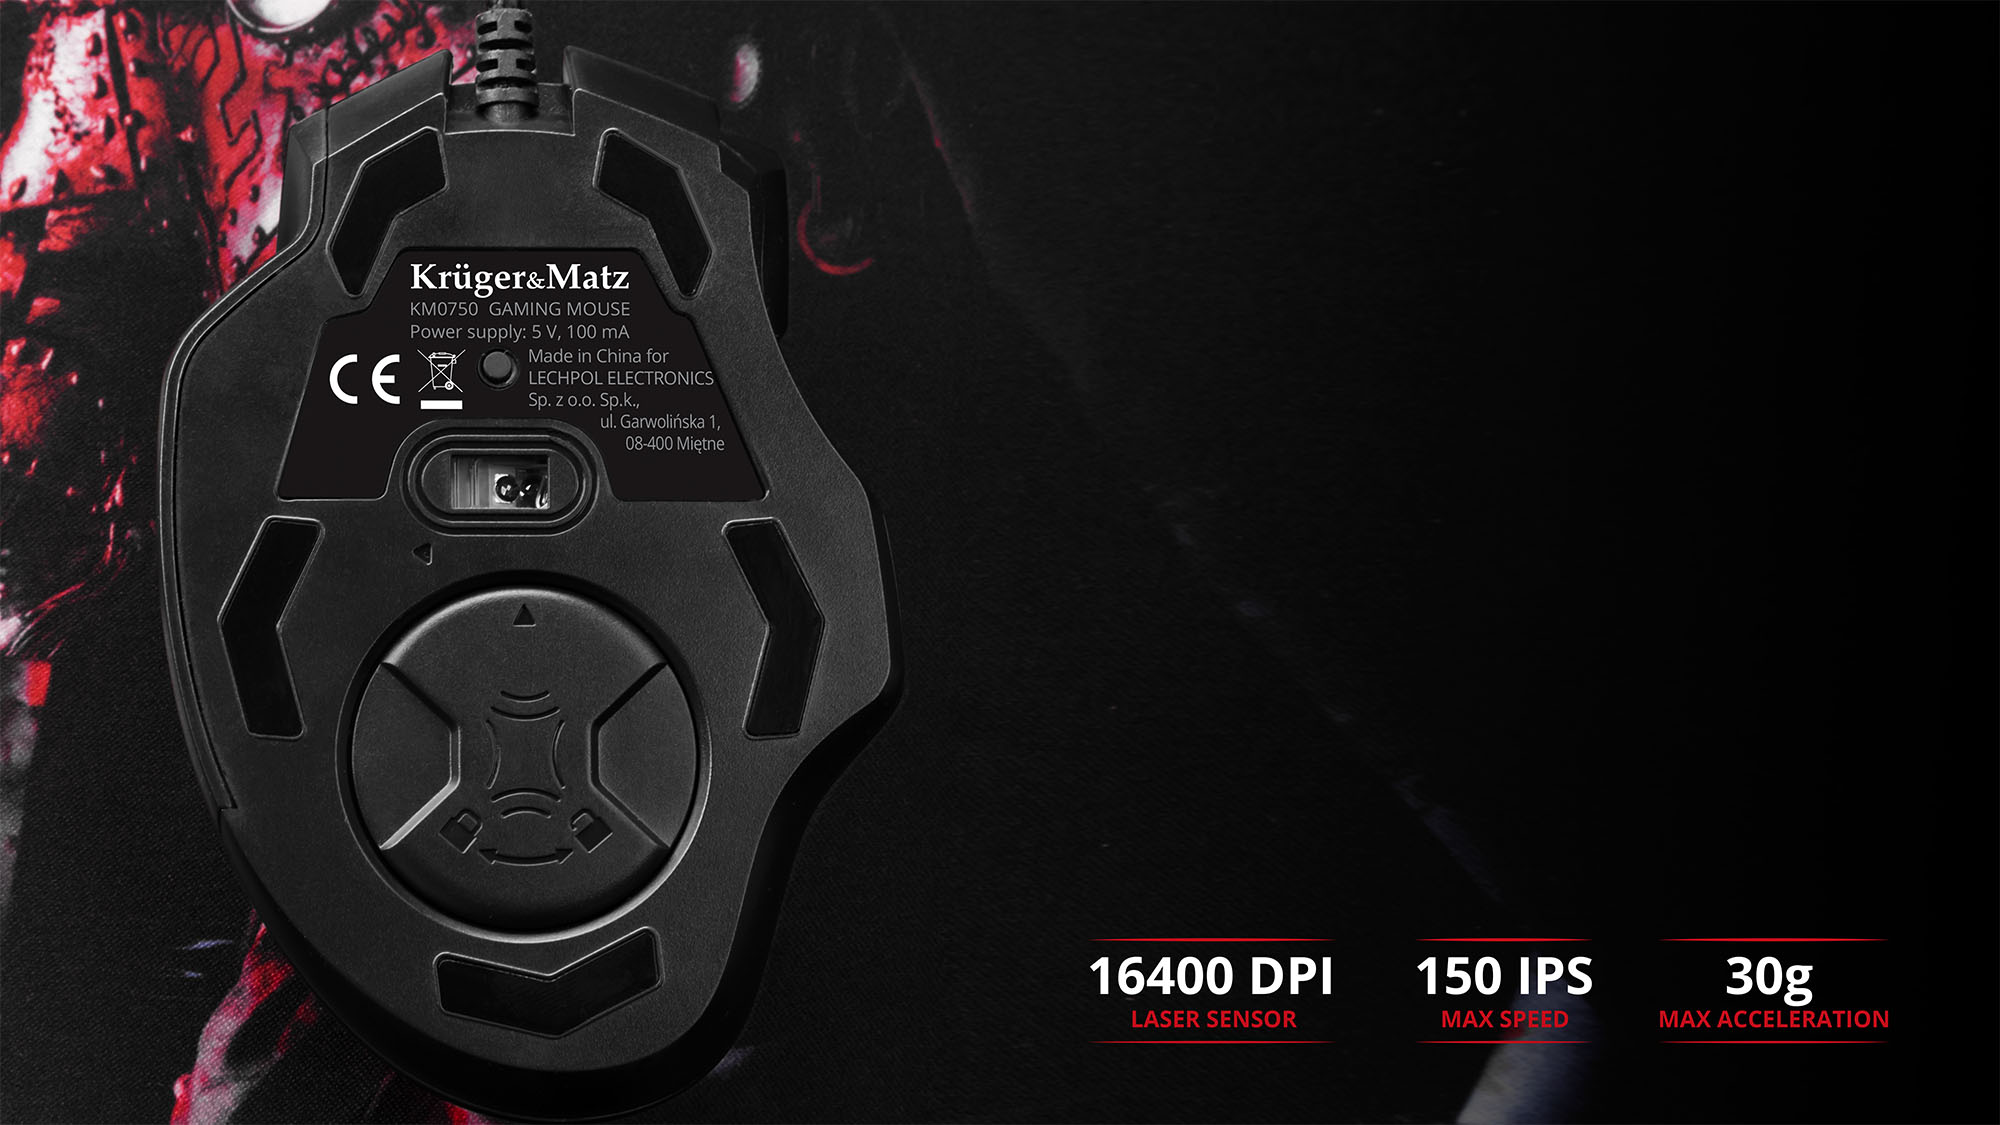  GM-50 este un mouse cu laser performant ce iti permite sa ai control complet asupra jocului. Datorita senzorului optic de inalta rezolutie - 16400 DPI, ai sansa sa iti domini oponentul prin viteza si precizie! 